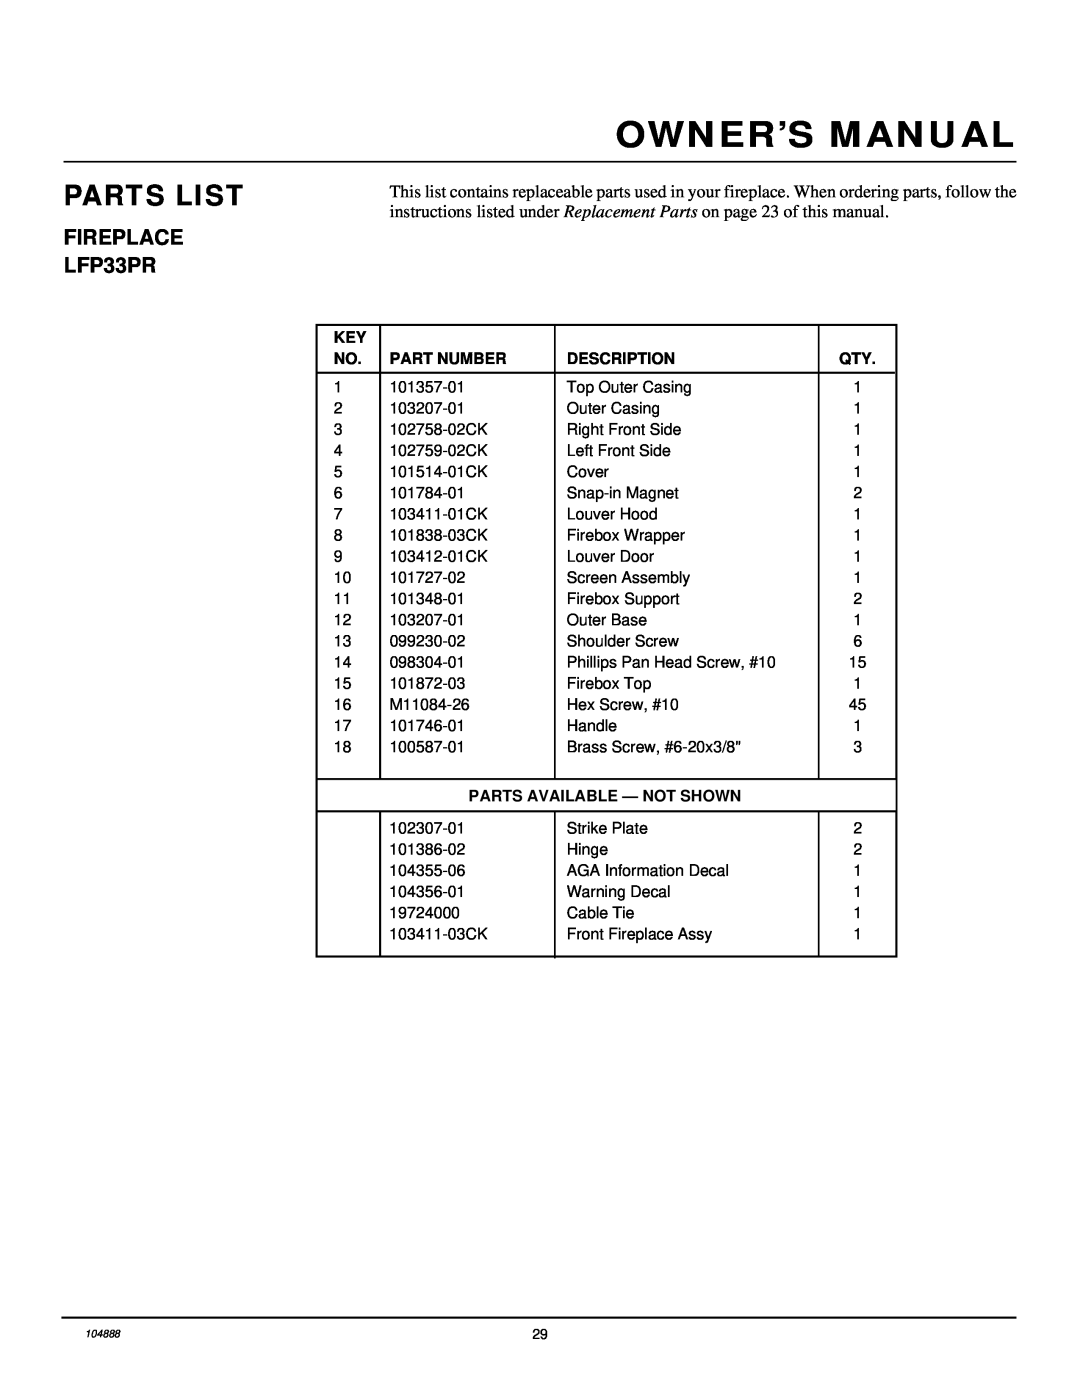 Desa installation manual FIREPLACE LFP33PR, Parts List, Part Number, Description, Parts Available - Not Shown 